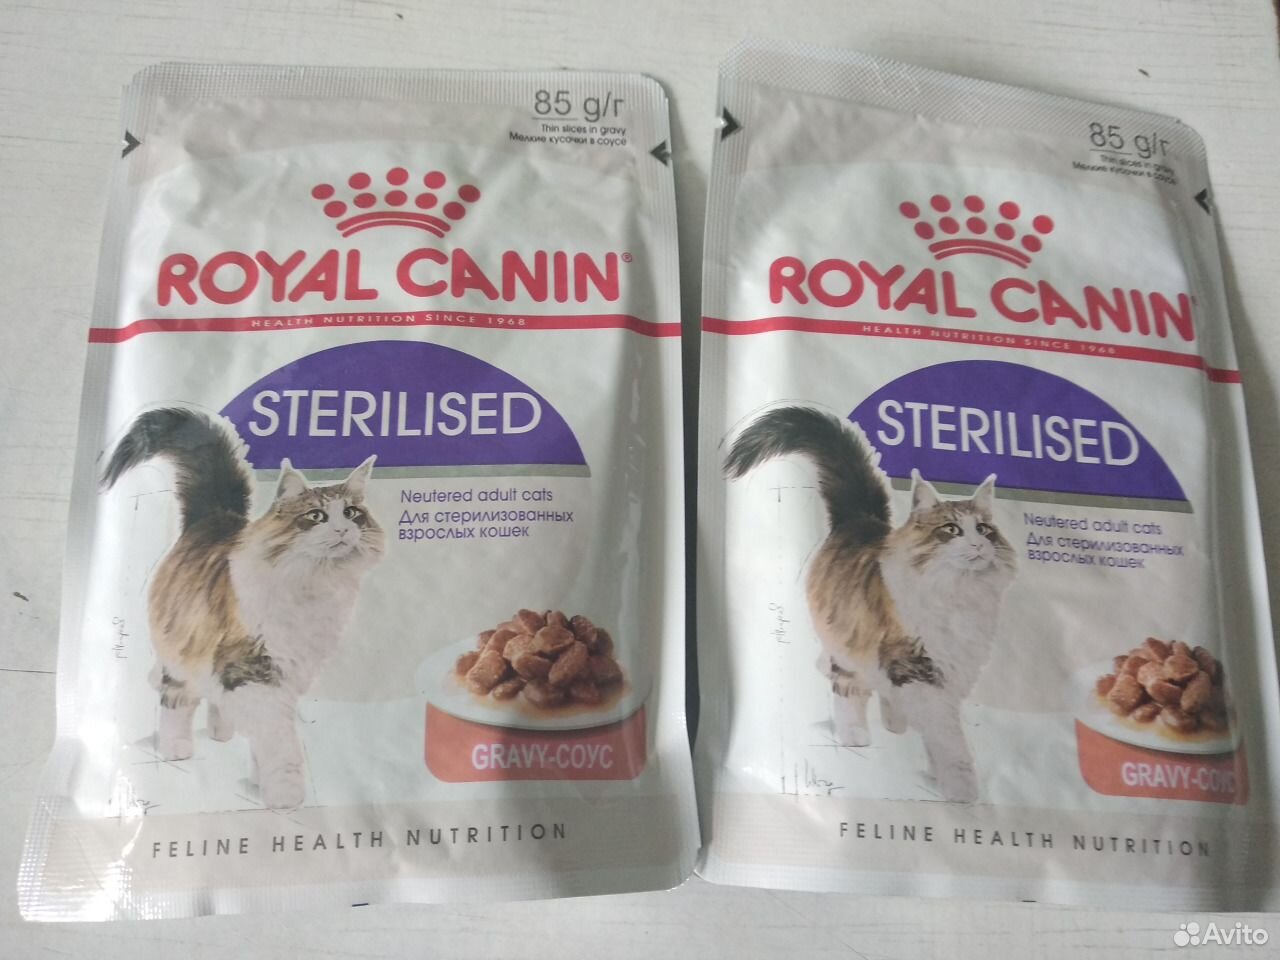 Роял Канин 85гр. Sterilised Royal Canin для кошек в соусе пауч. Royal Canin в пауч для кастрированных Sterilised. Royal Canin Sterilised пауч для кастрированных котов и стерилизованных кошек.